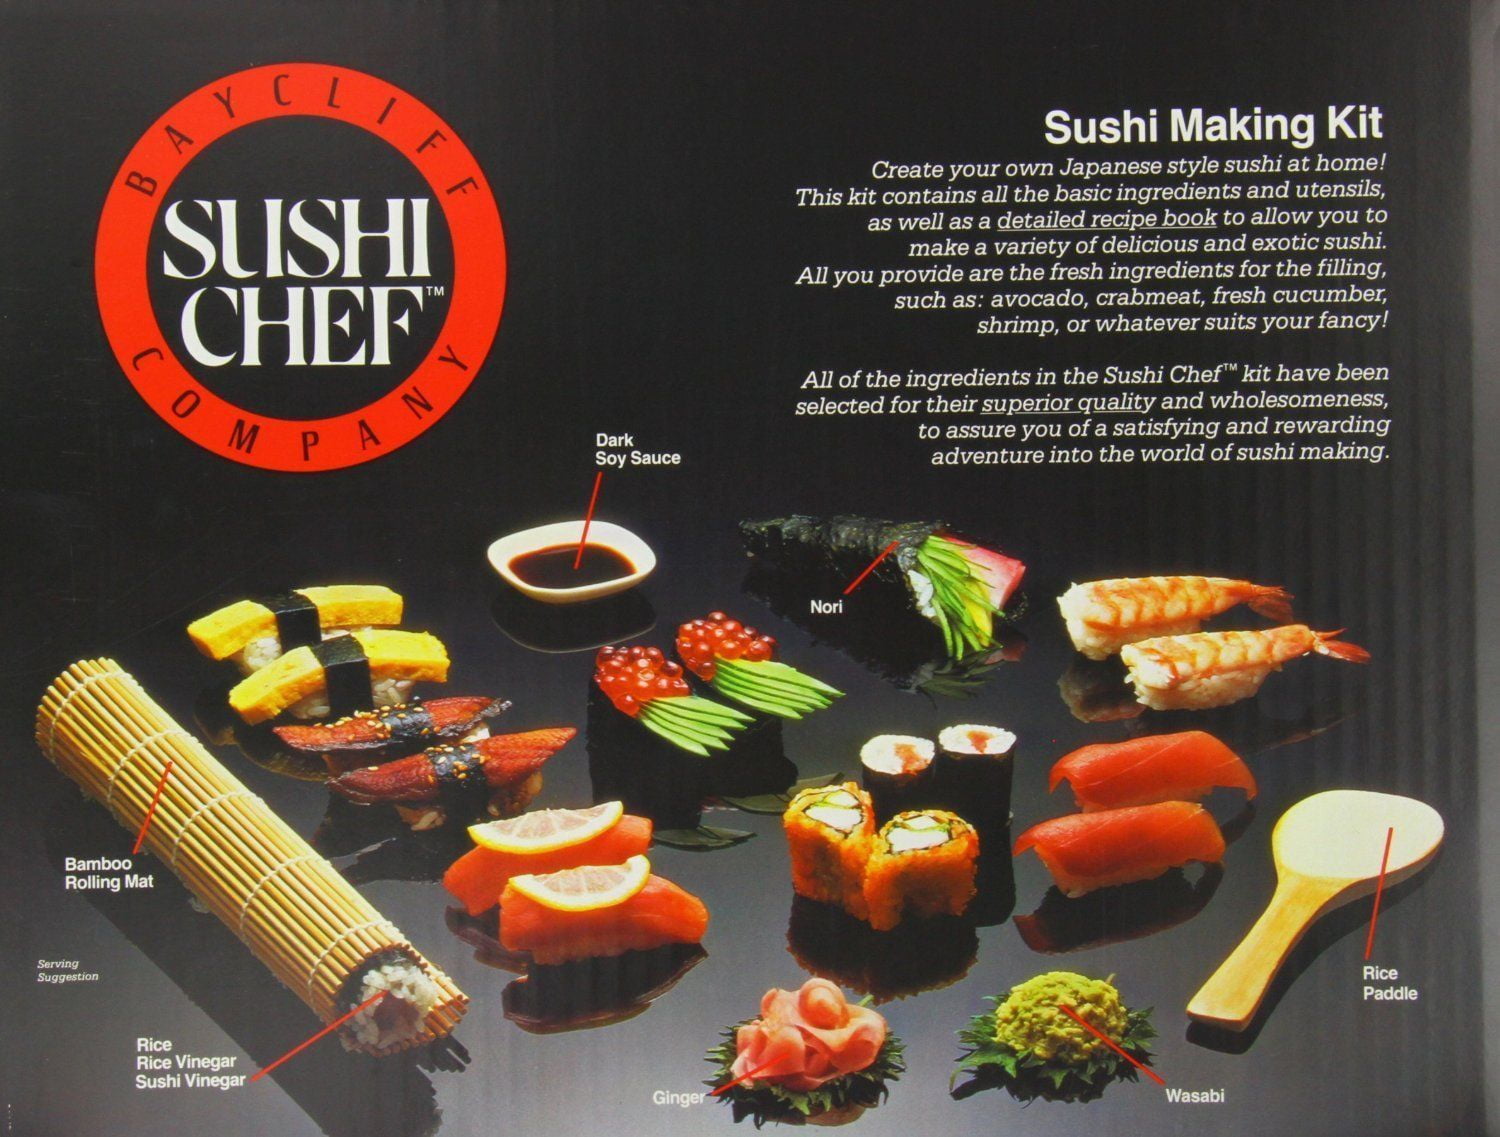 10 Best Sushi Making Kits 2017 